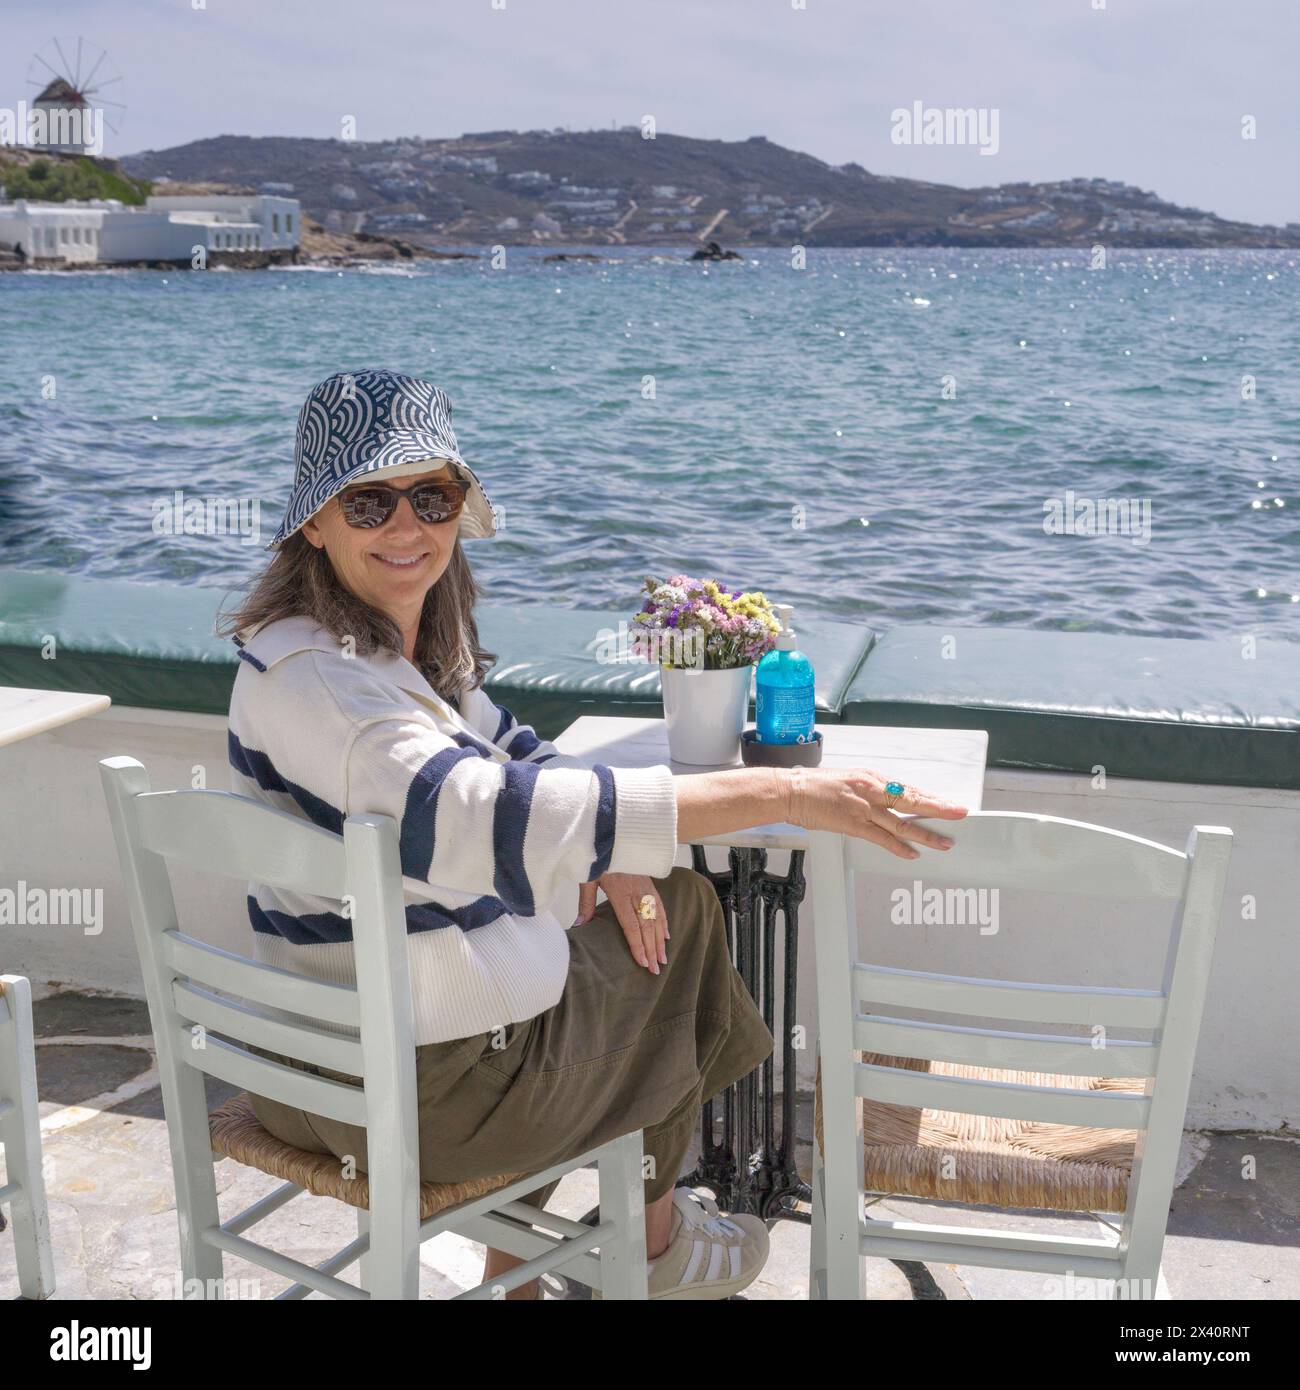 Femme portant un chapeau de soleil et des lunettes de soleil profite d'un café au bord de l'eau par une journée ensoleillée à Mykonos, Grèce ; Mykonos, Grèce Banque D'Images